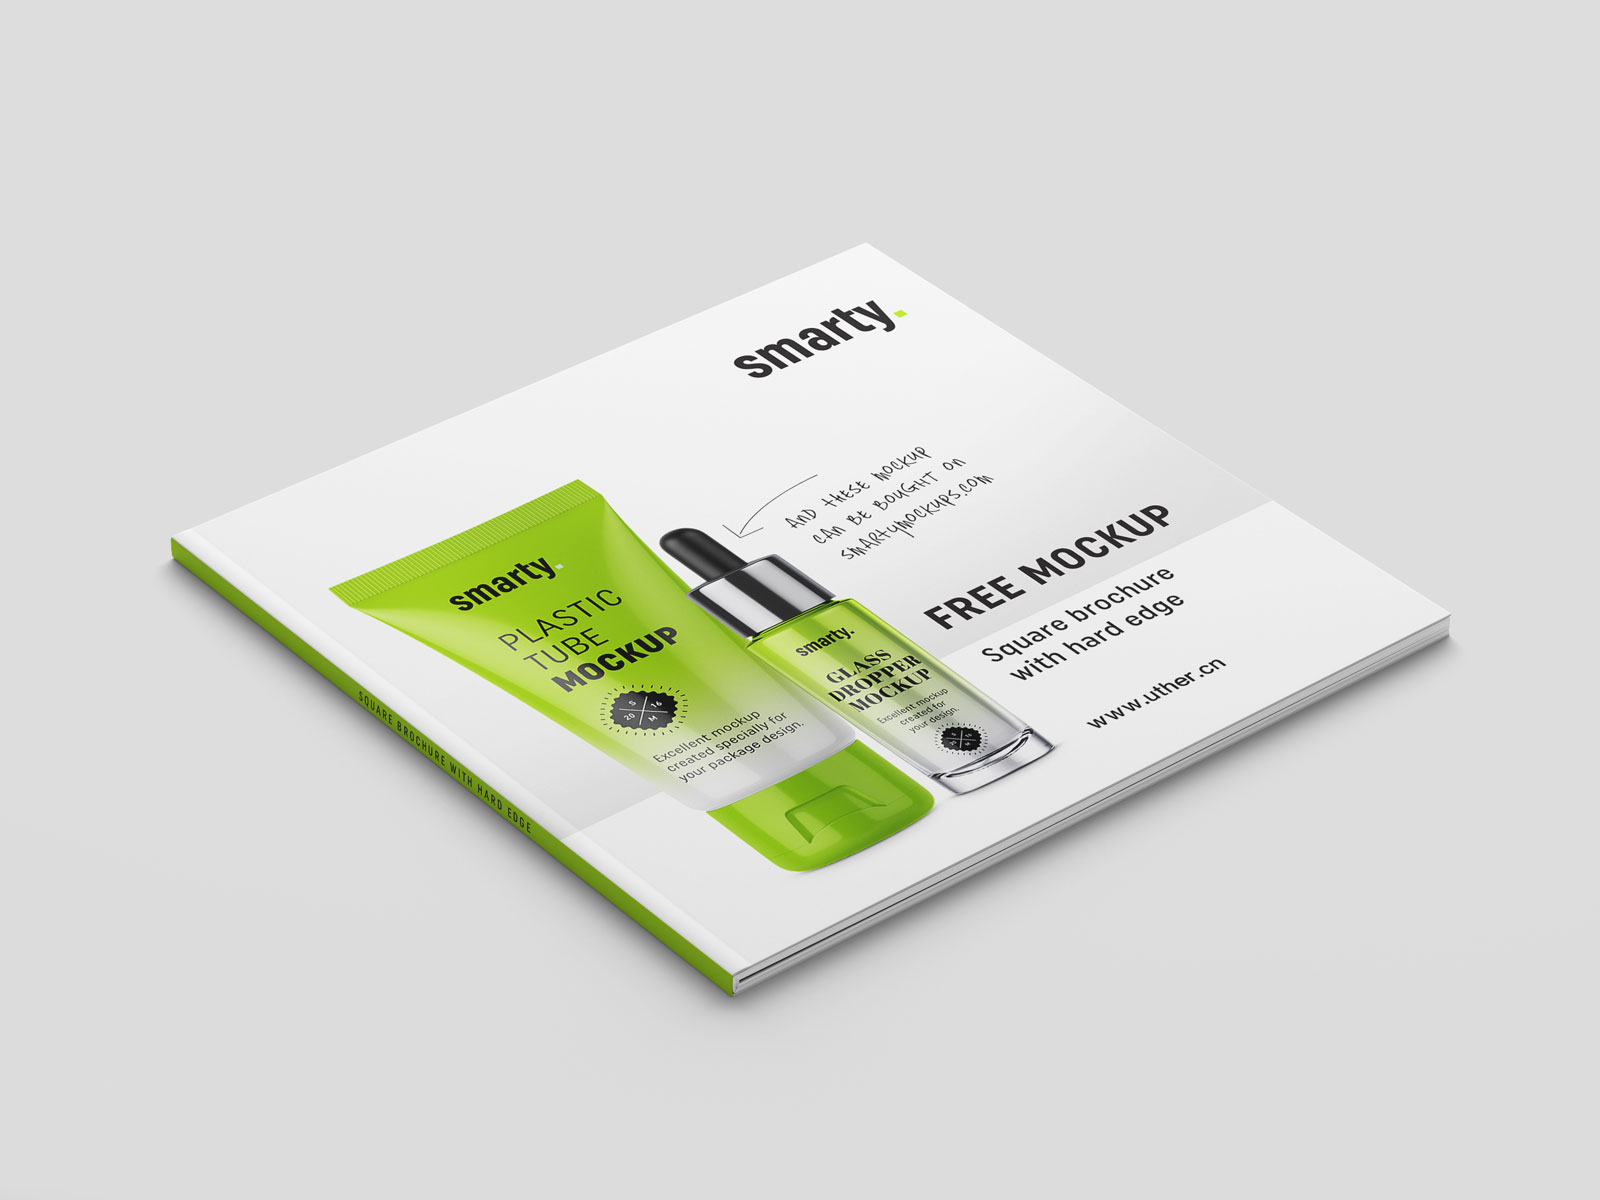 绿色大气正方形产品宣传册设计封面展示样机素材brochure mockup .psd素材